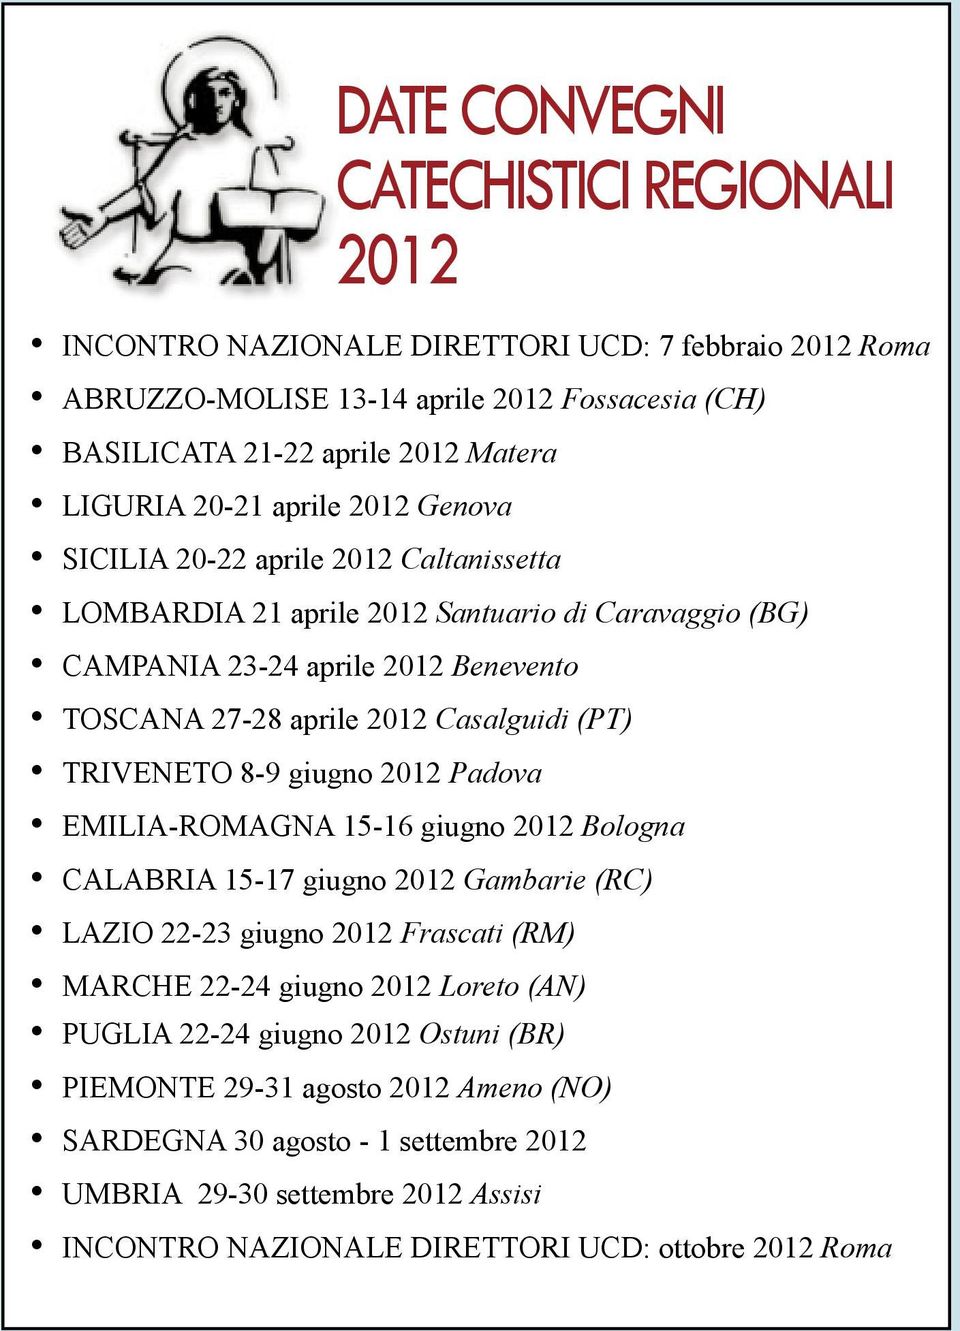 EMILIA-ROMAGNA 15-16 giugno 2012 Bologna CALABRIA 15-17 giugno 2012 Gambarie (RC) LAZIO 22-23 giugno 2012 Frascati (RM) MARCHE 22-24 giugno 2012 Loreto (AN) PUGLIA 22-24 giugno 2012 Ostuni (BR)